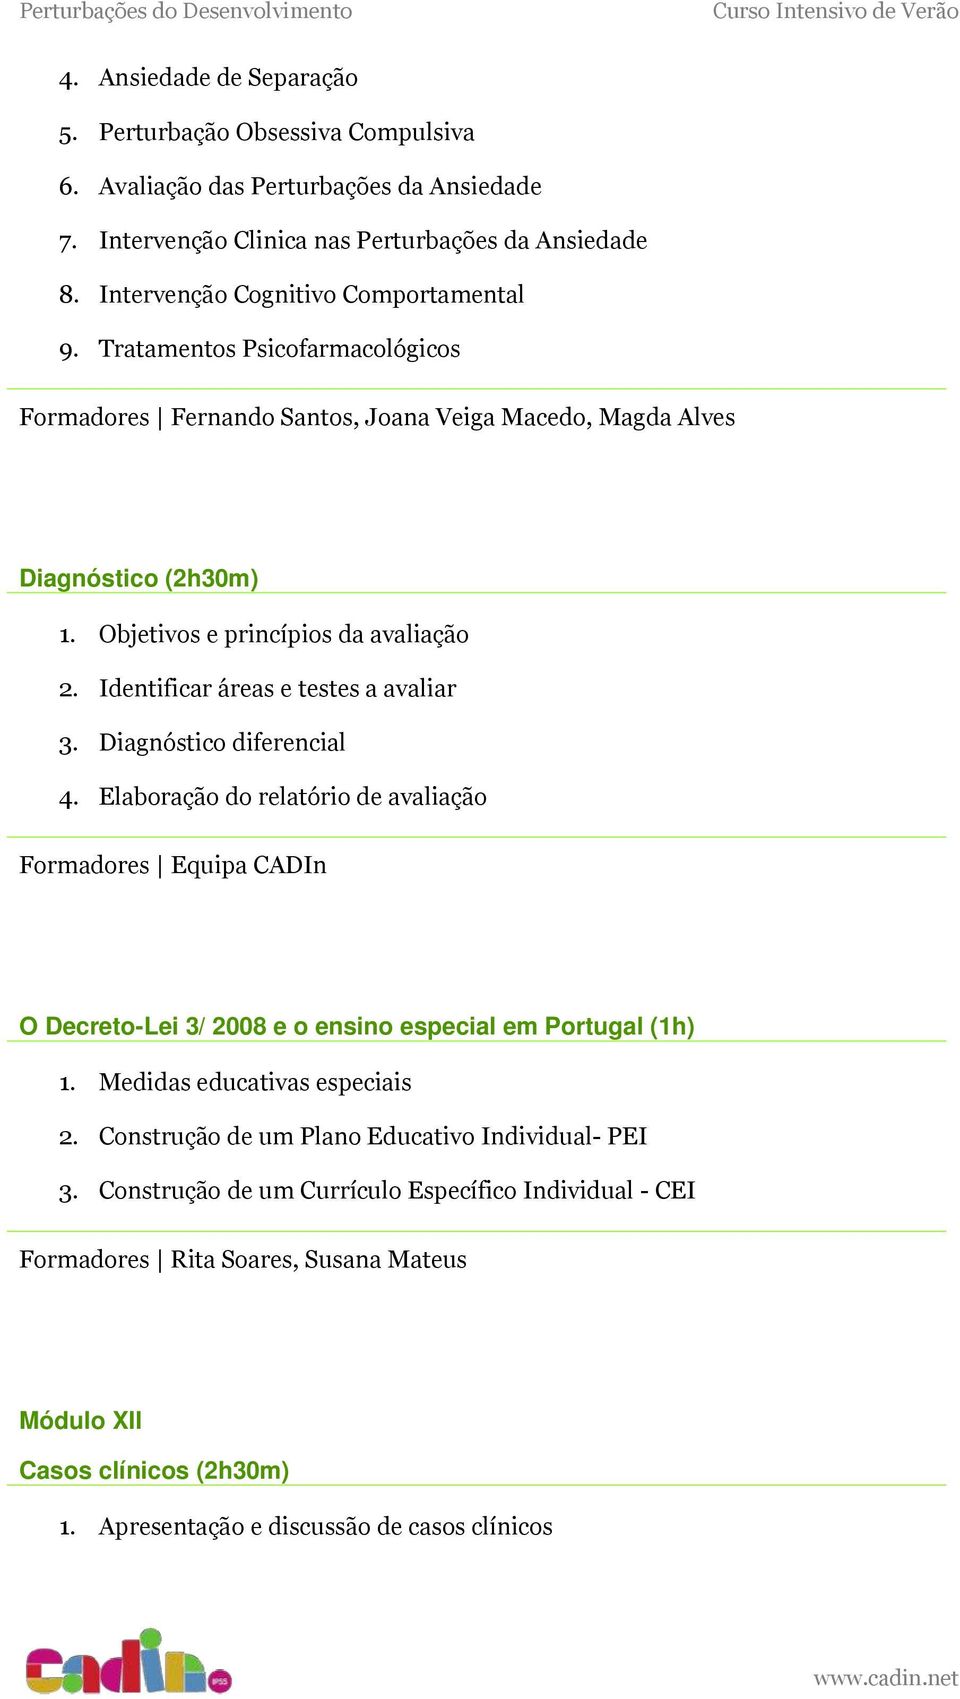 Diagnóstico diferencial 4. Elaboração do relatório de avaliação Formadores Equipa CADIn O Decreto-Lei 3/ 2008 e o ensino especial em Portugal (1h) 1. Medidas educativas especiais 2.